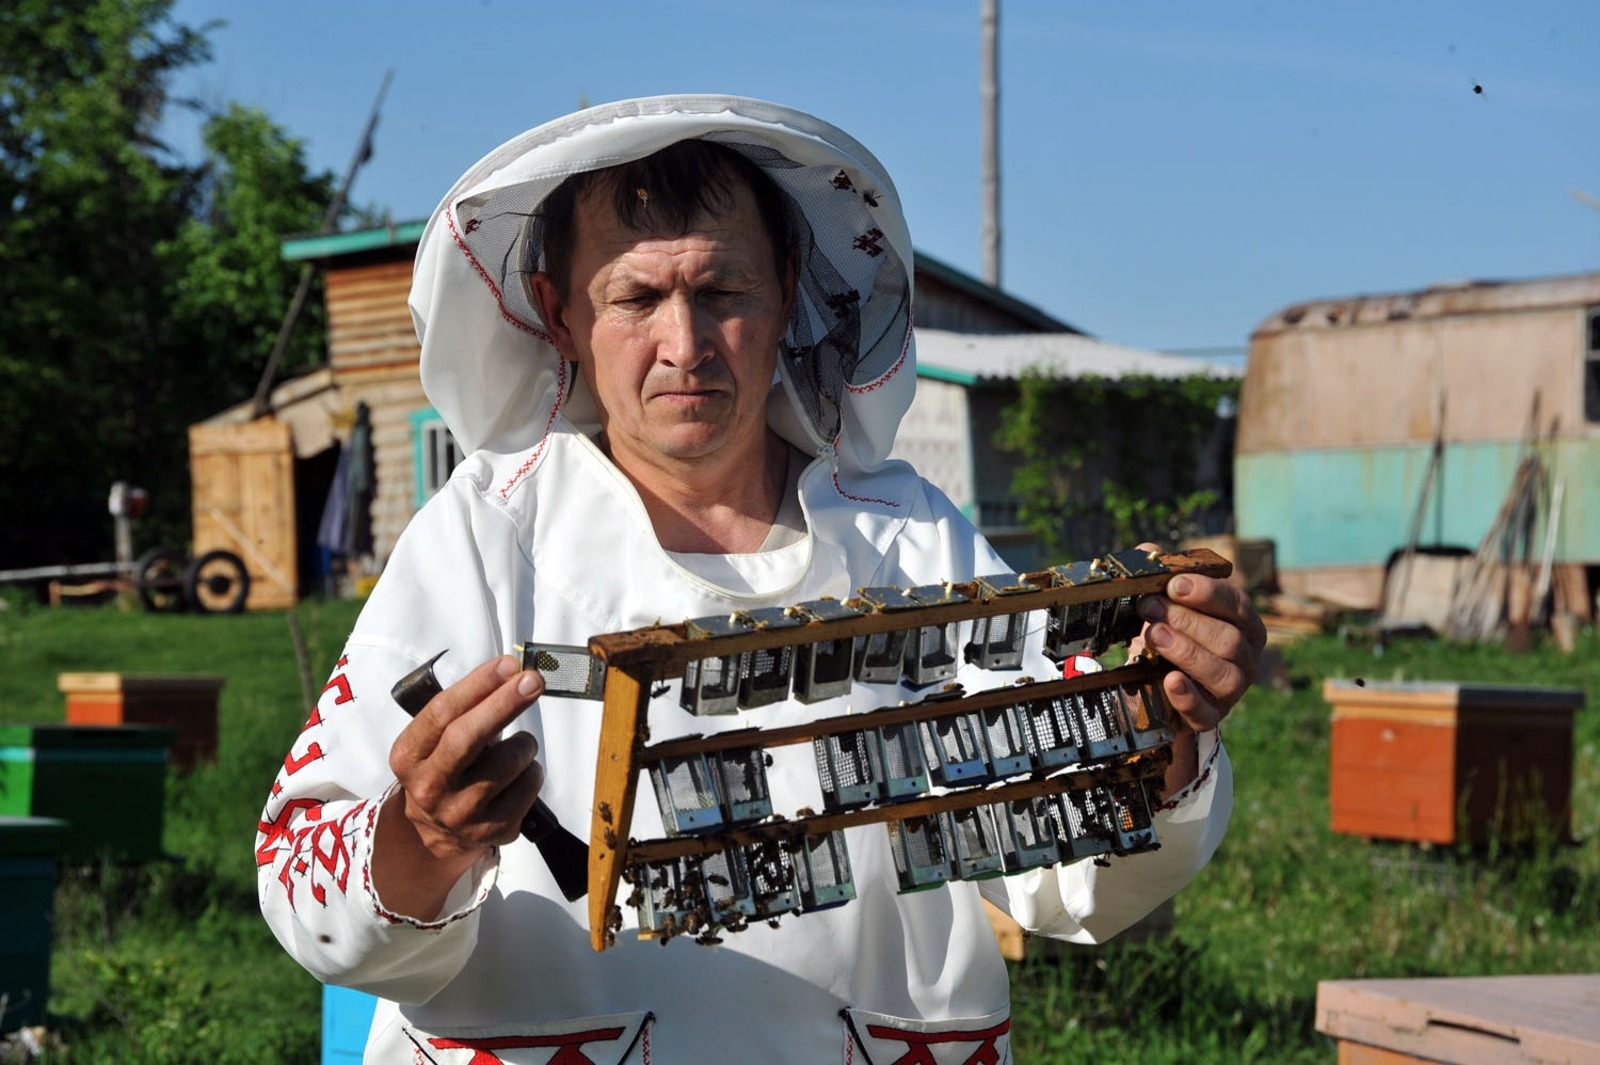 Ринат РАЗАПОВ  Вениамин Зайниев из Мишкинского района решил стать промышленным пчеловодом.